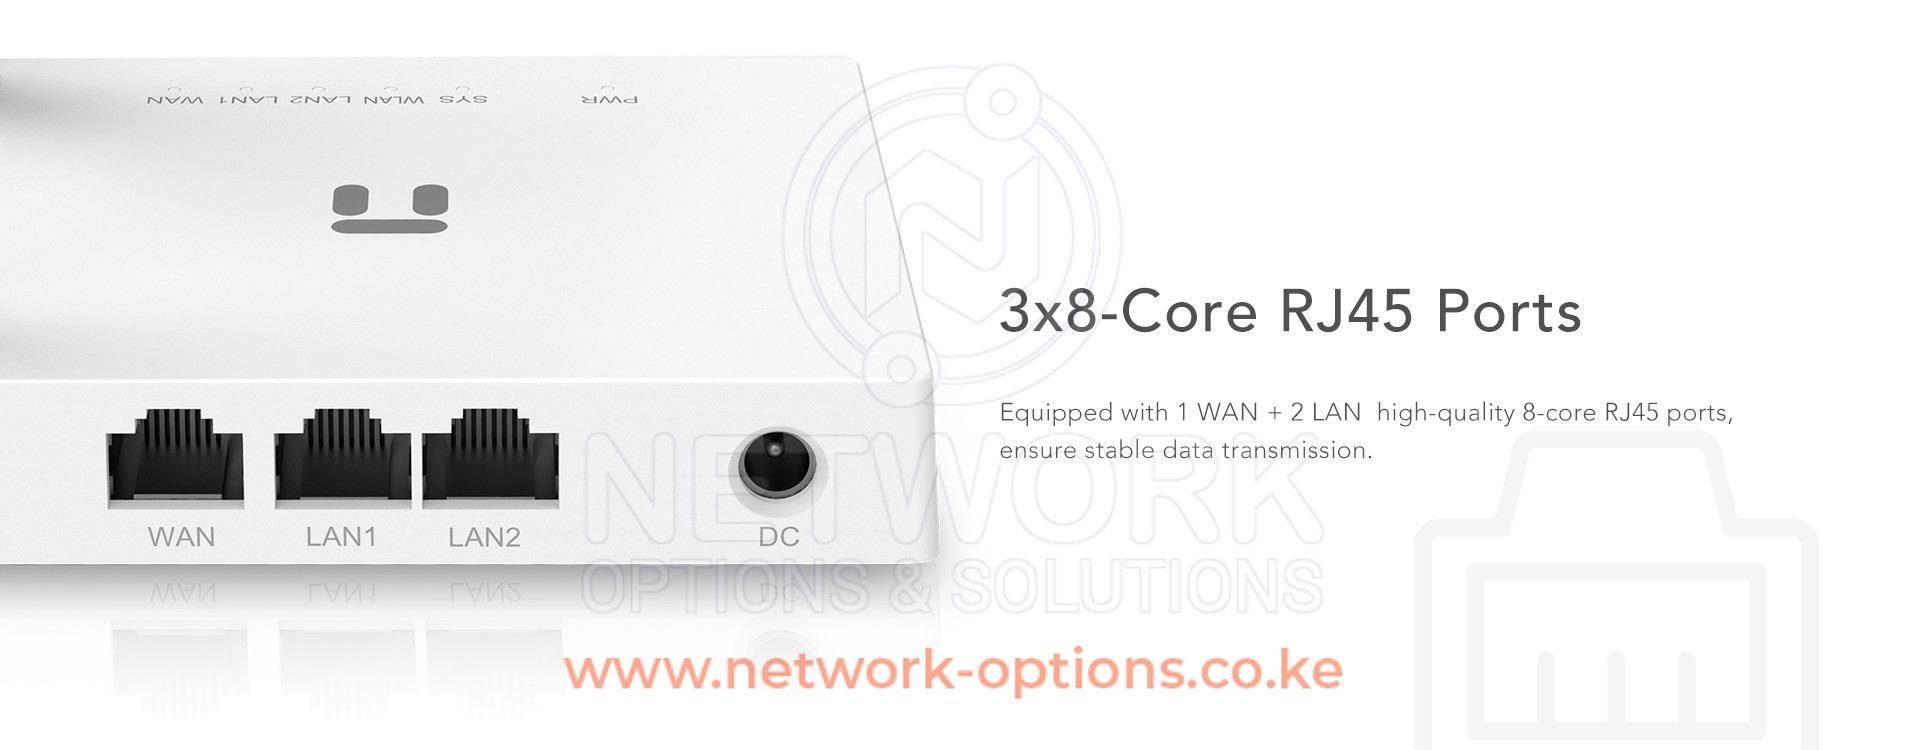 netis W2 router Kenya